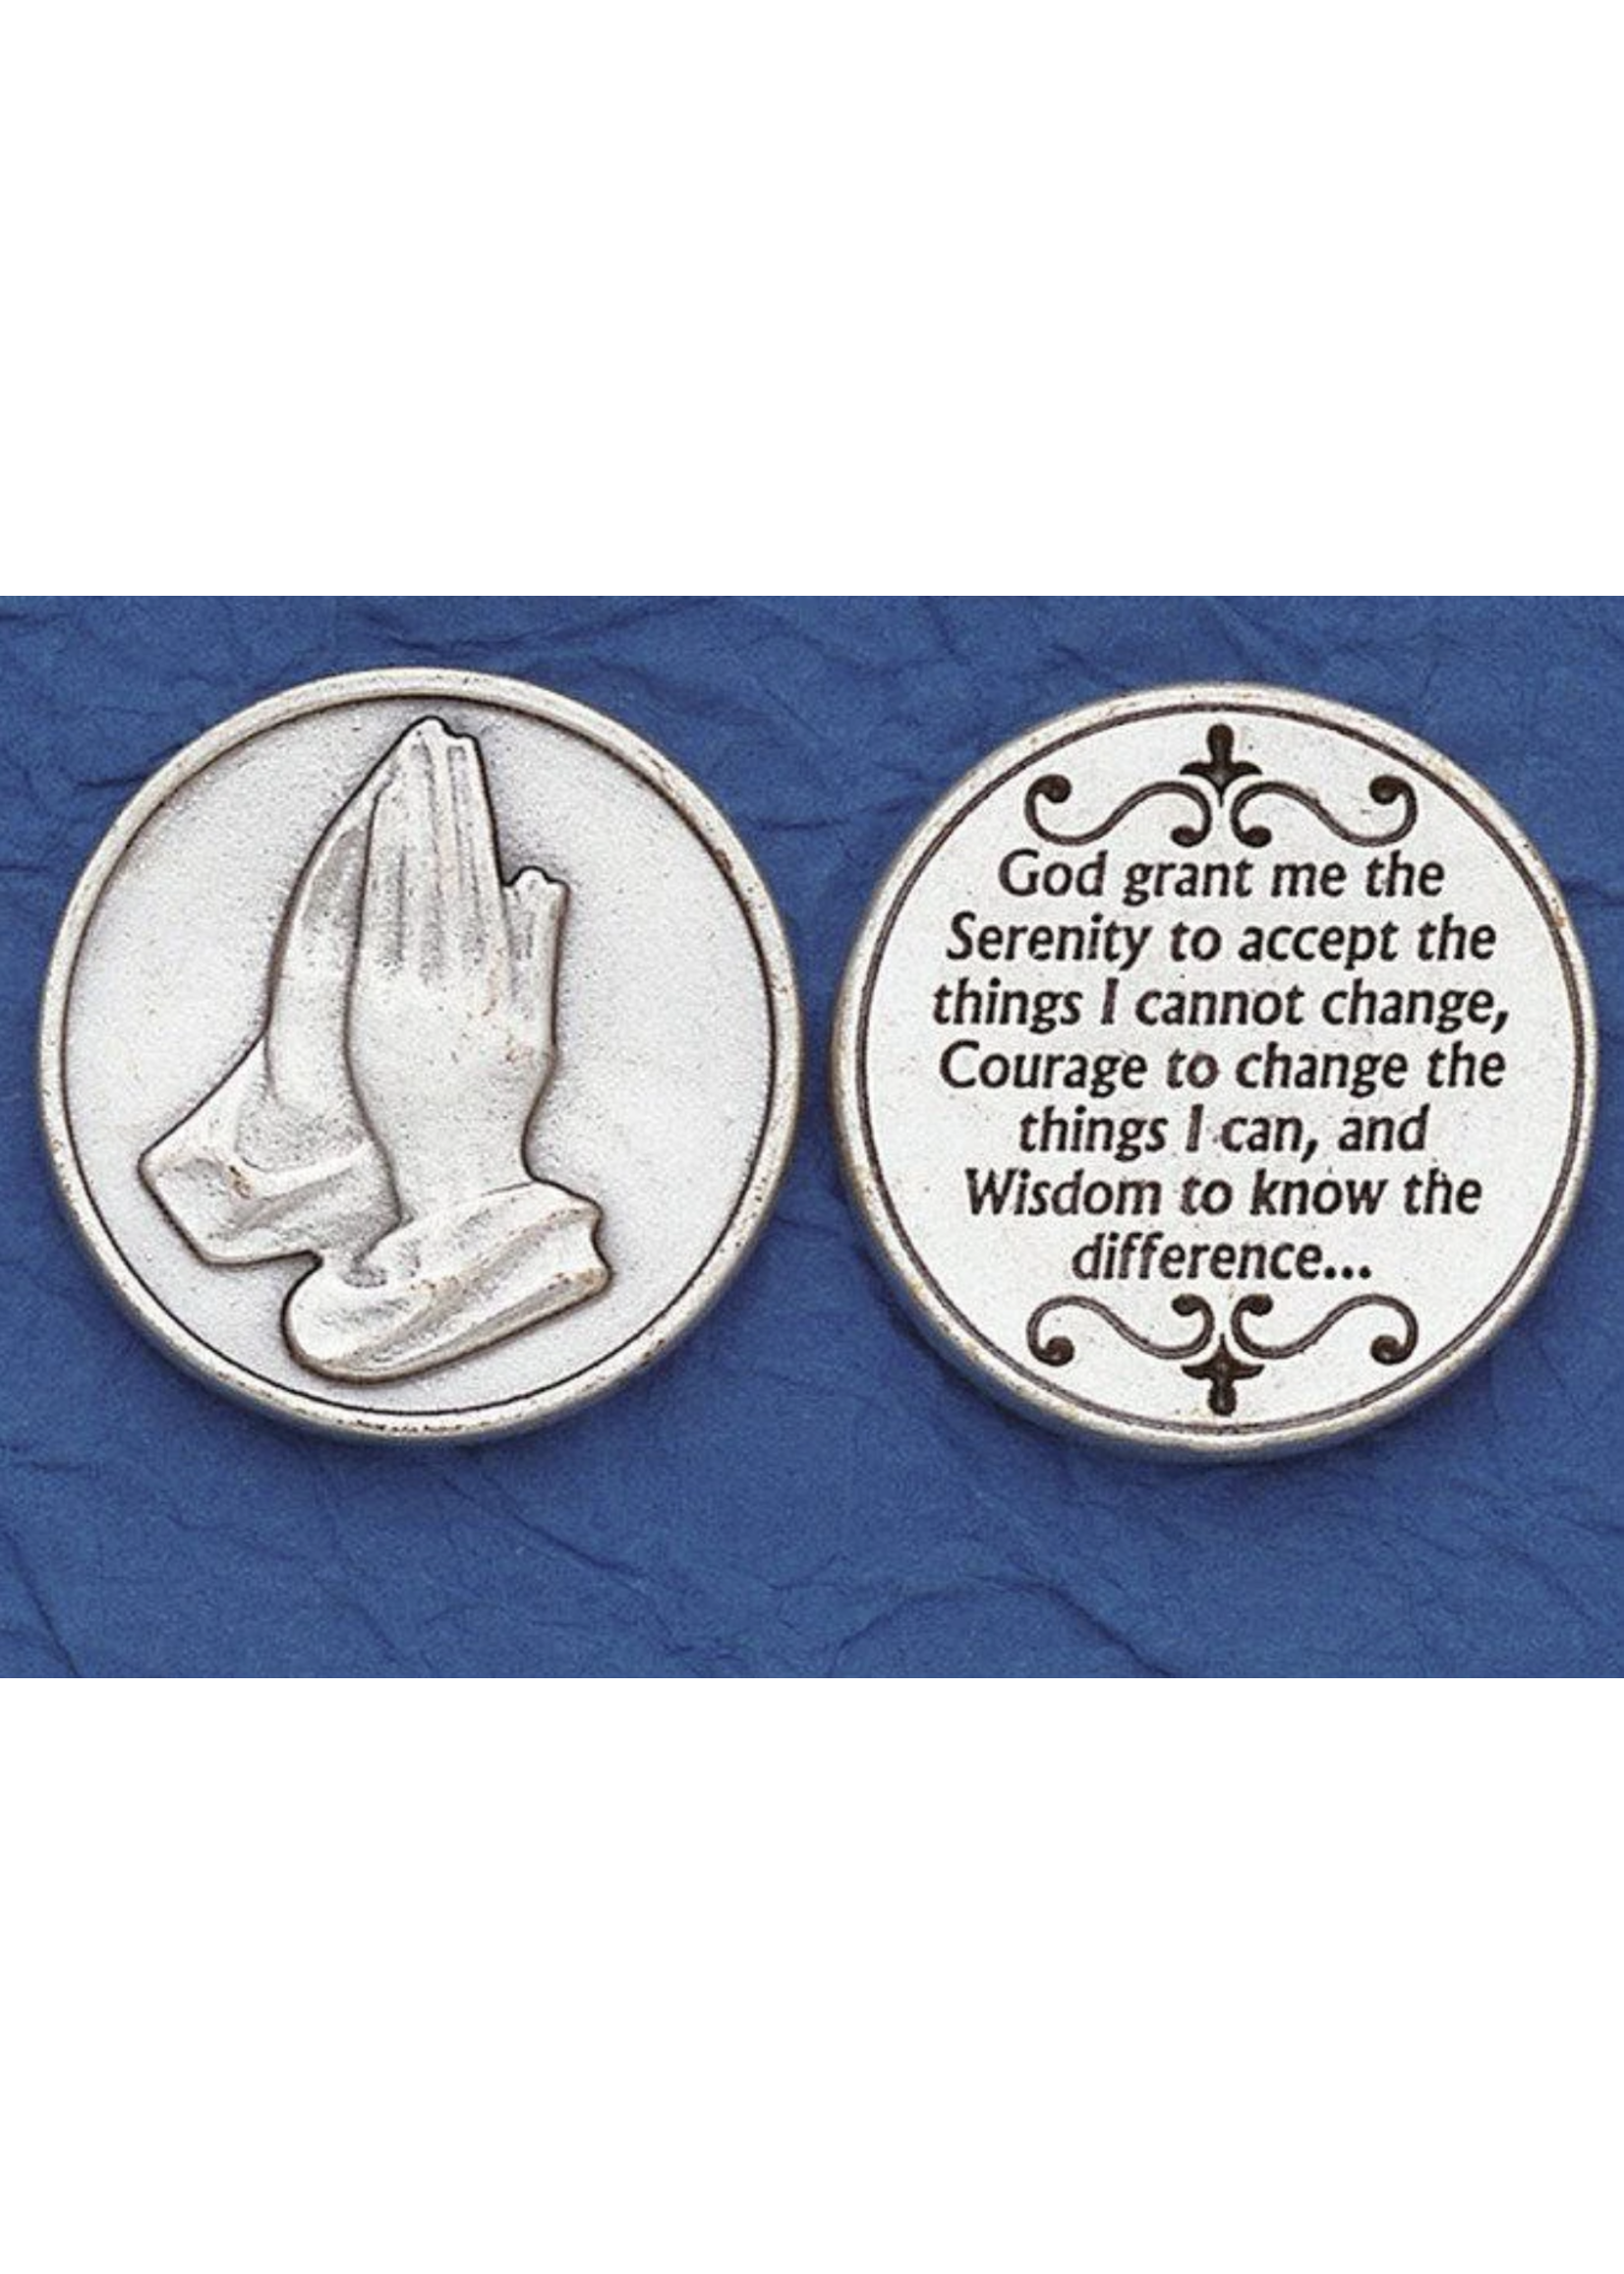 Serenity Prayer pocket token/coin